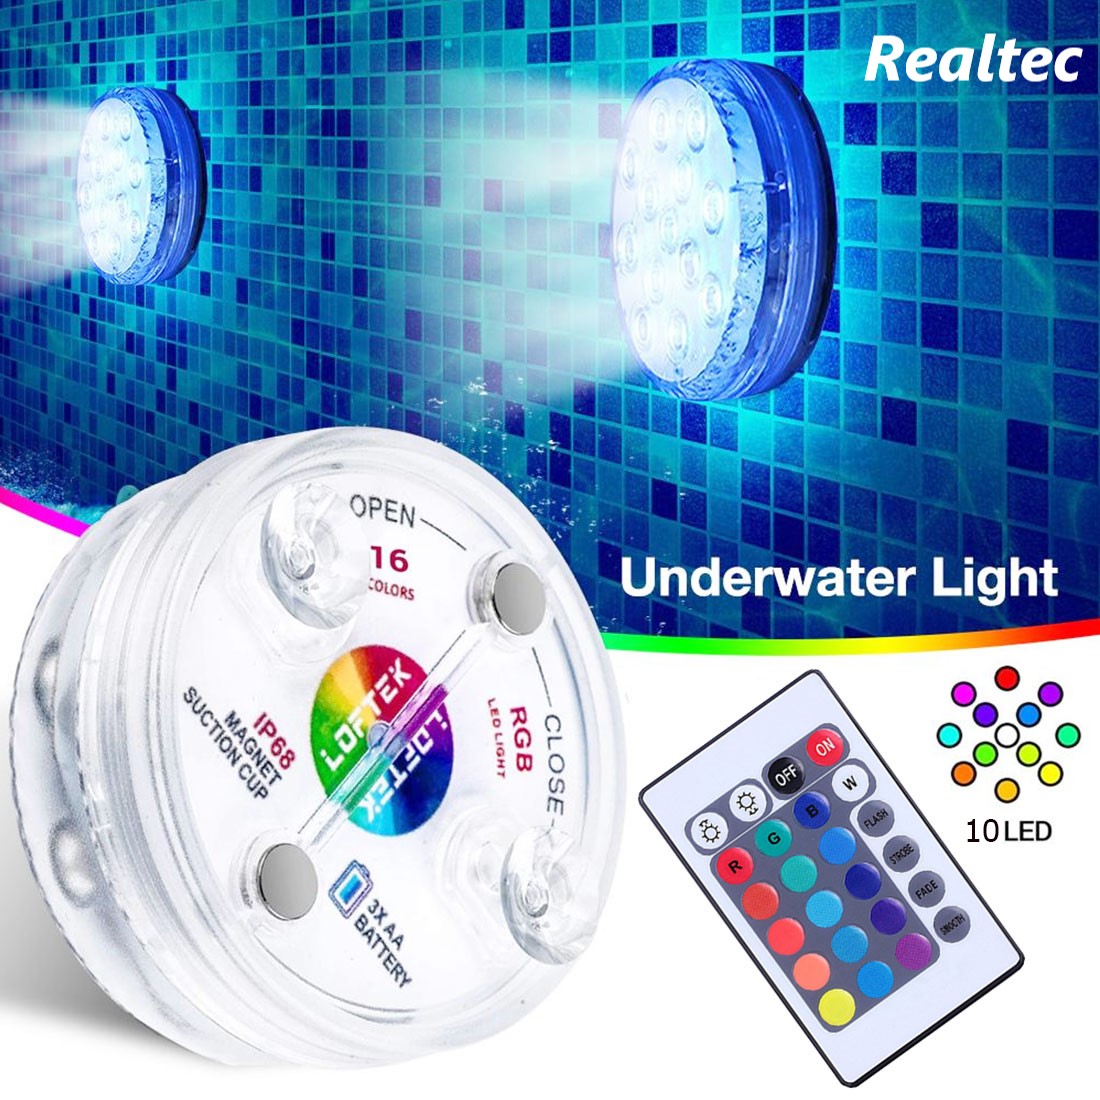 การควบคุมระยะไกลไร้สาย LED หลายสีสปอตไลกันน้ำพรรคโคมไฟตกแต่งแสง ใช้ได้ทั้งภายนอกและใต้น้ำ underwater light 1pcs/4pcs Realtec